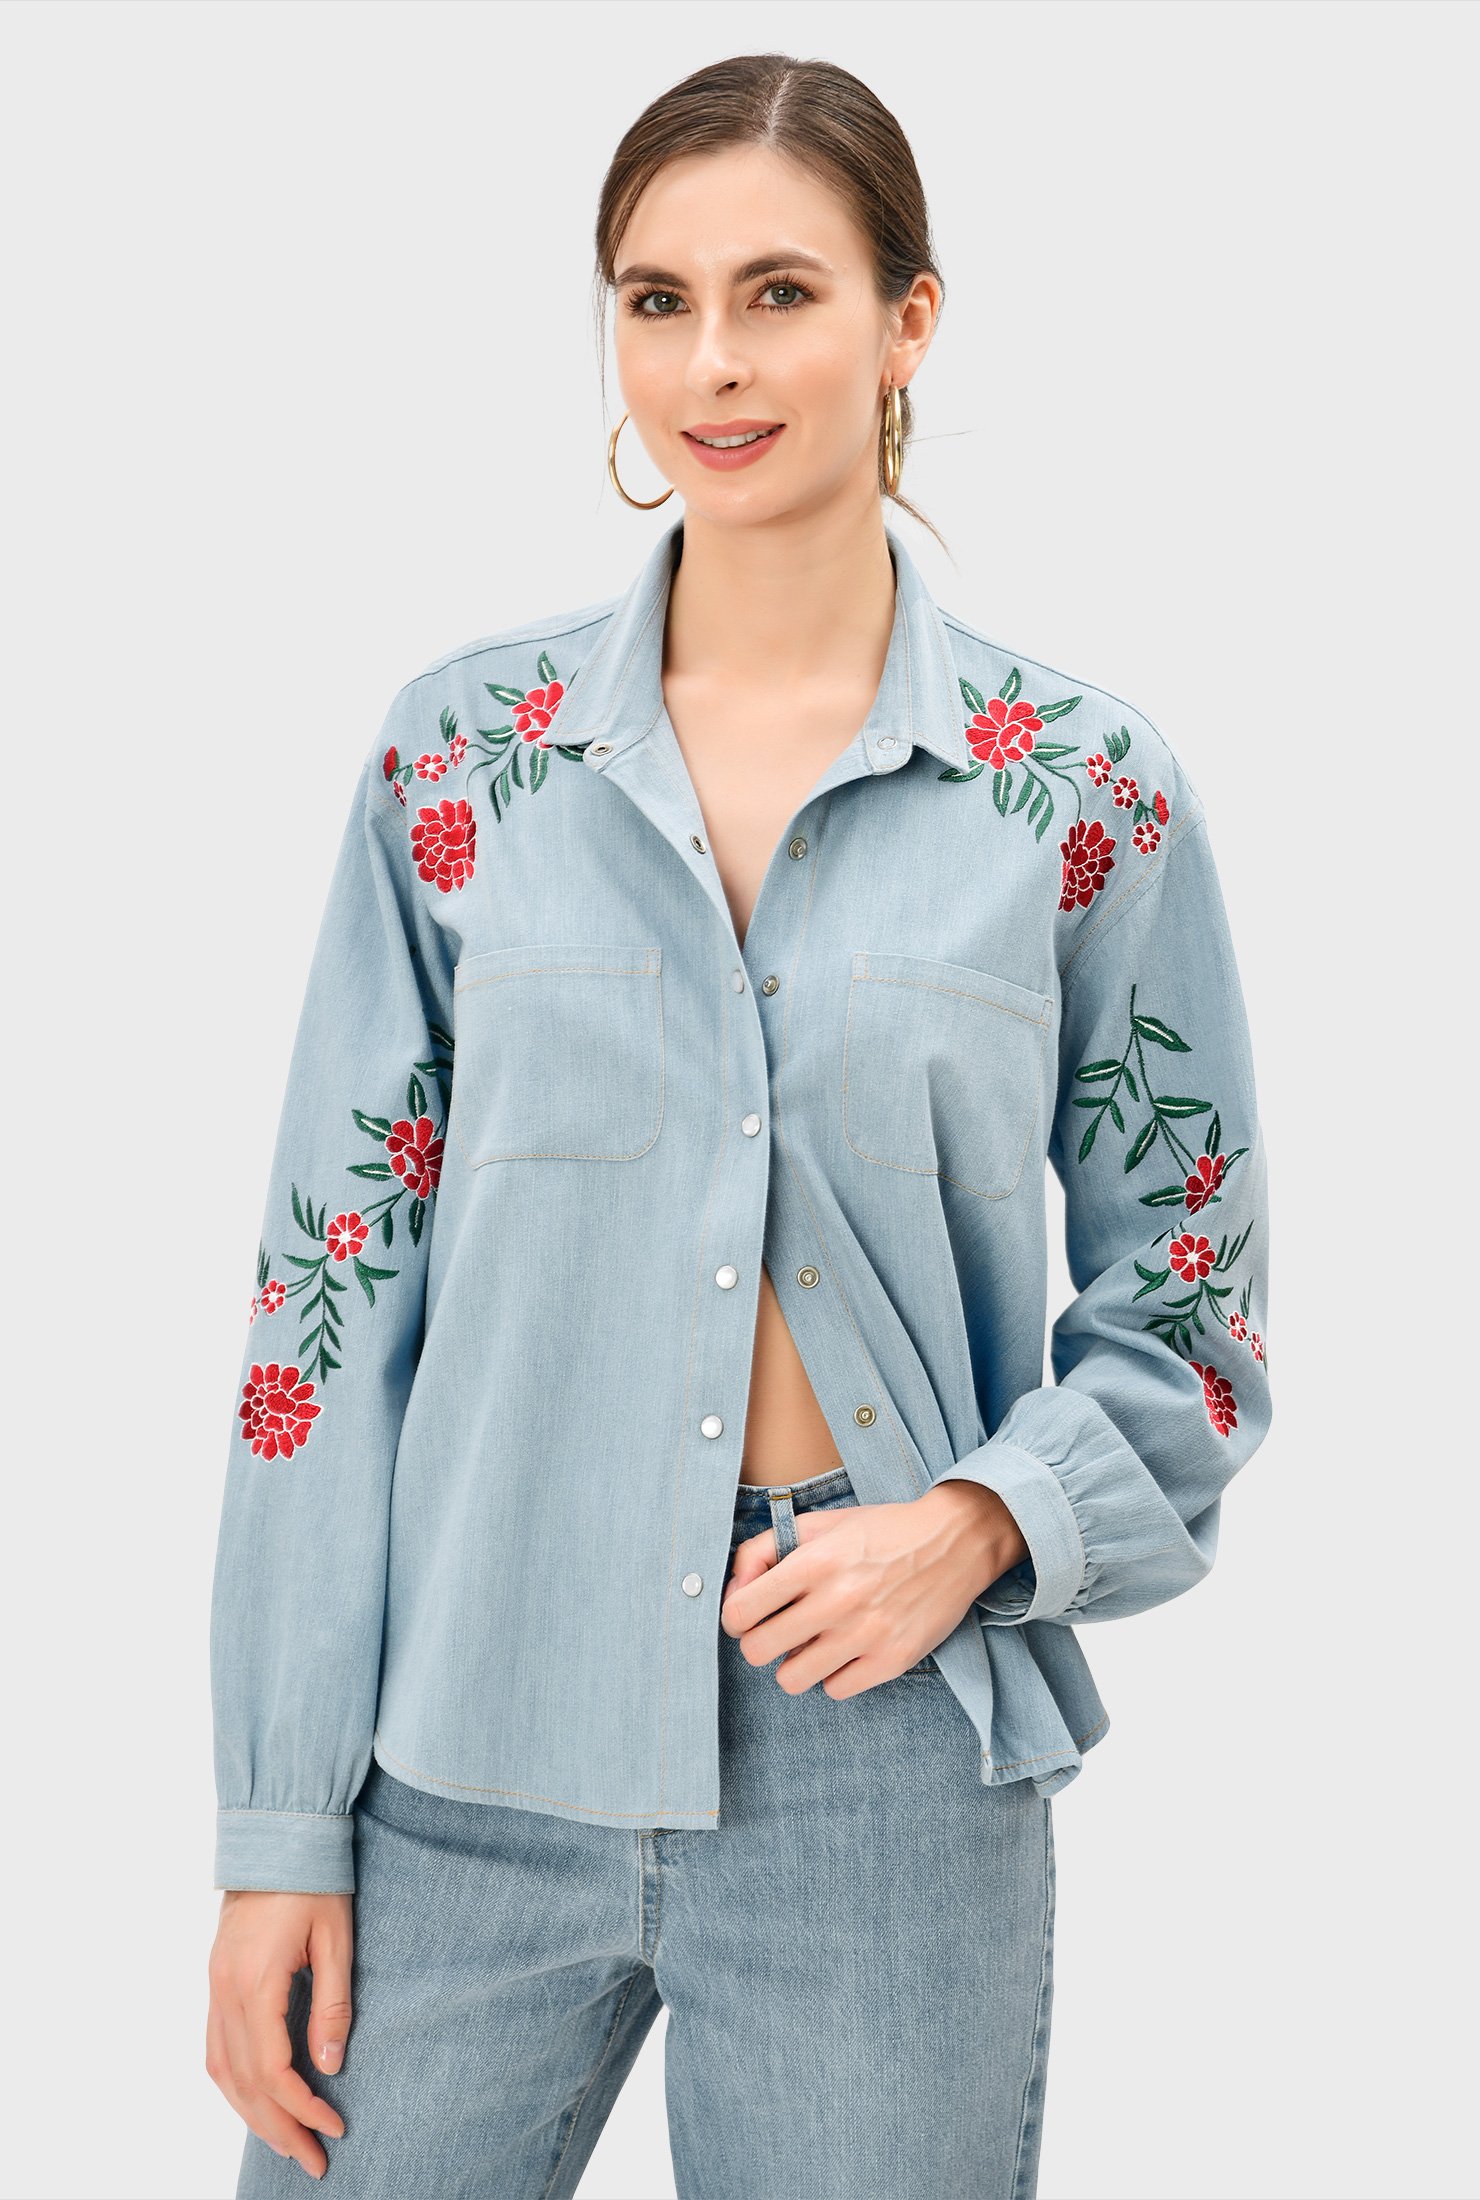 Shop Floral embroidery cotton denim high-low shirt | eShakti